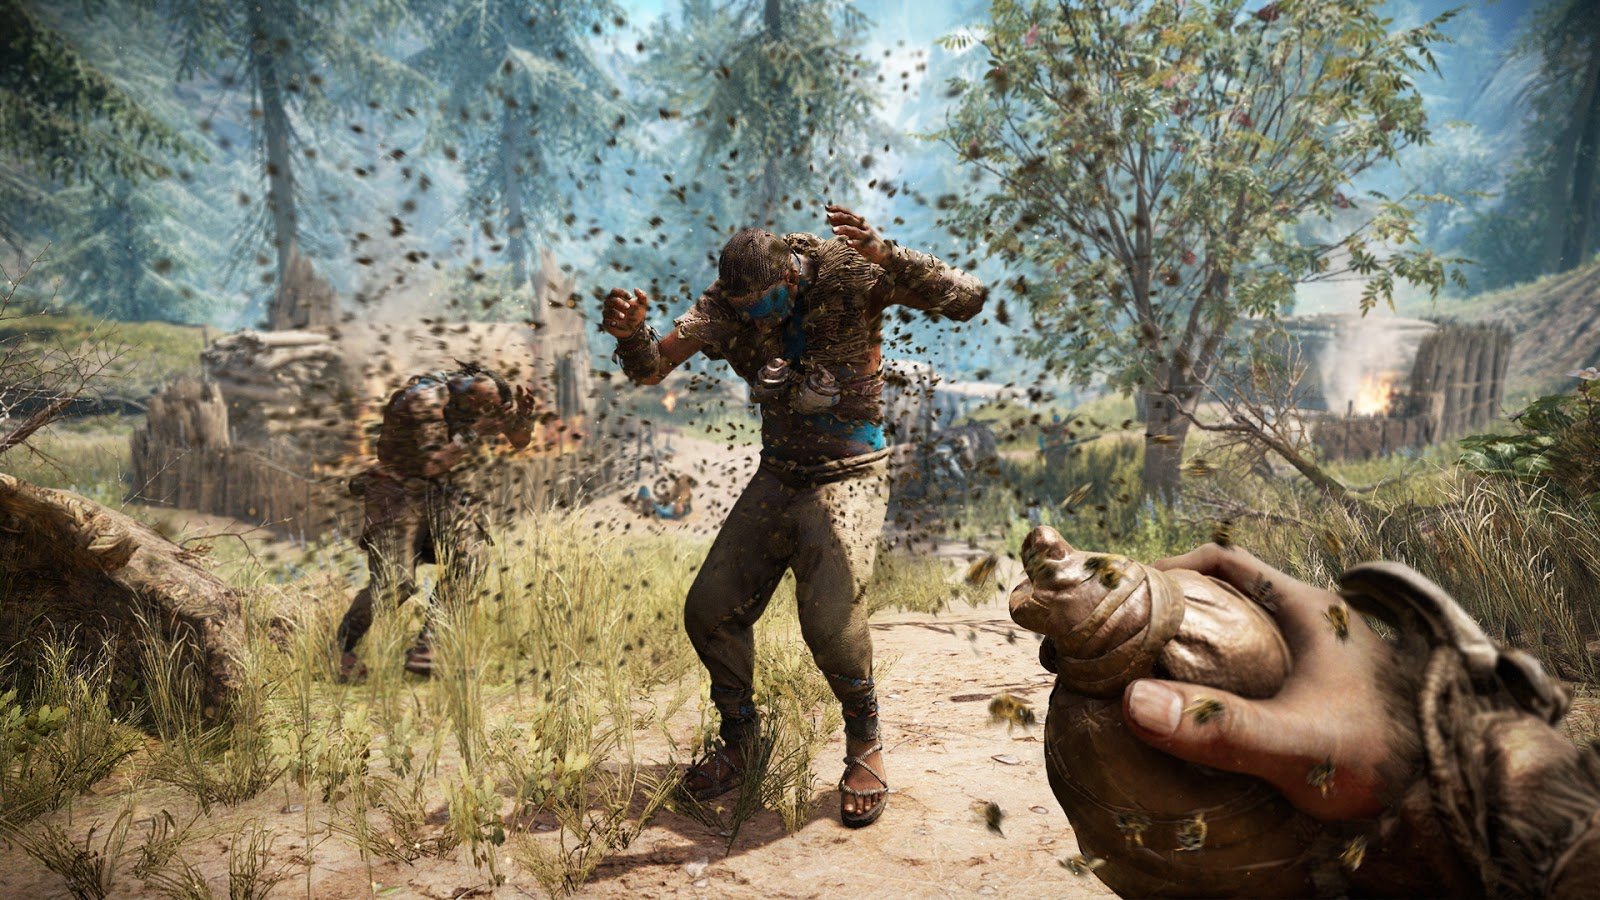 Far Cry 5: Requisitos mínimos para rodar o game no PC em 30 ou